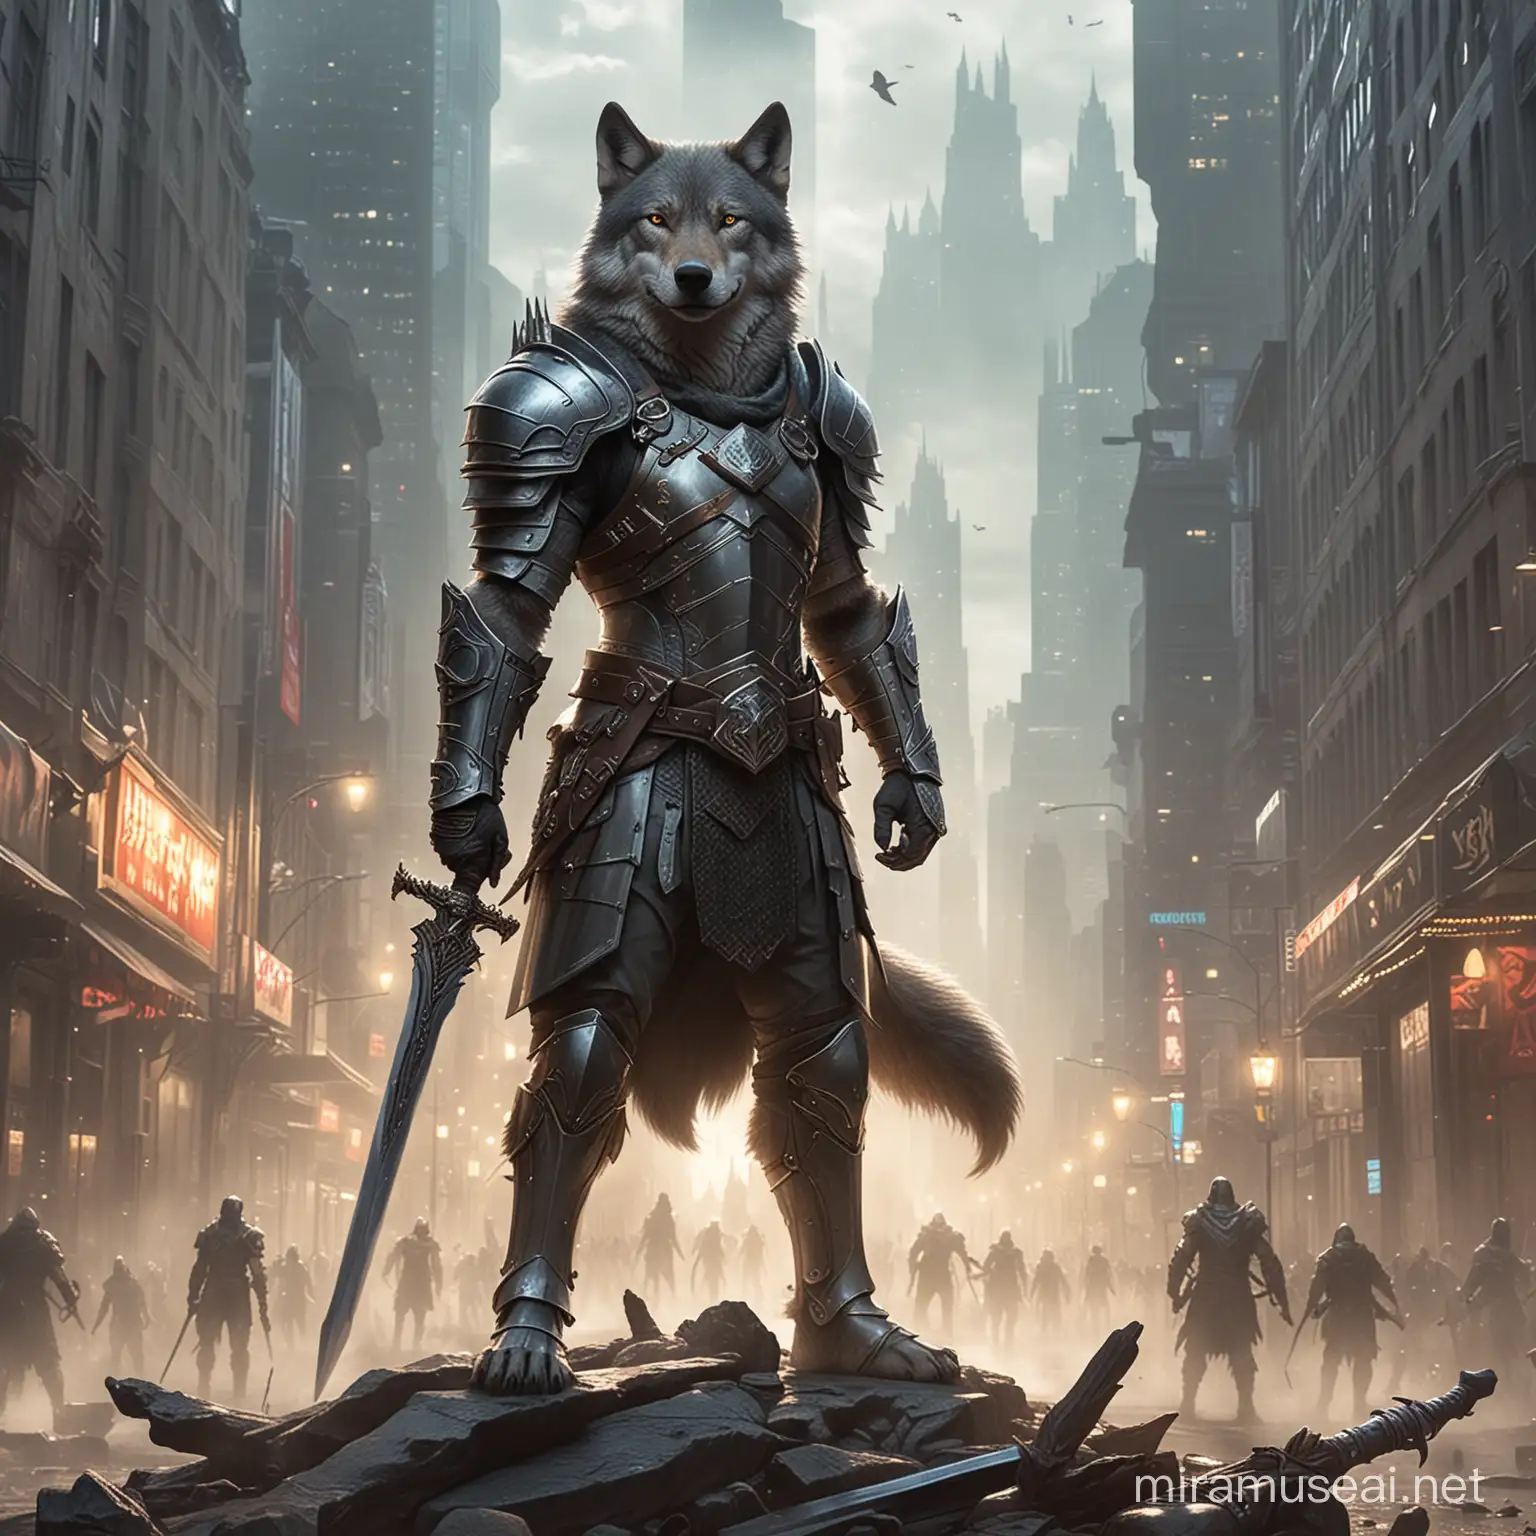 волк на задних лапах, в доспехах, с магическим мечём, 21 век, стоит посреди мегаполиса